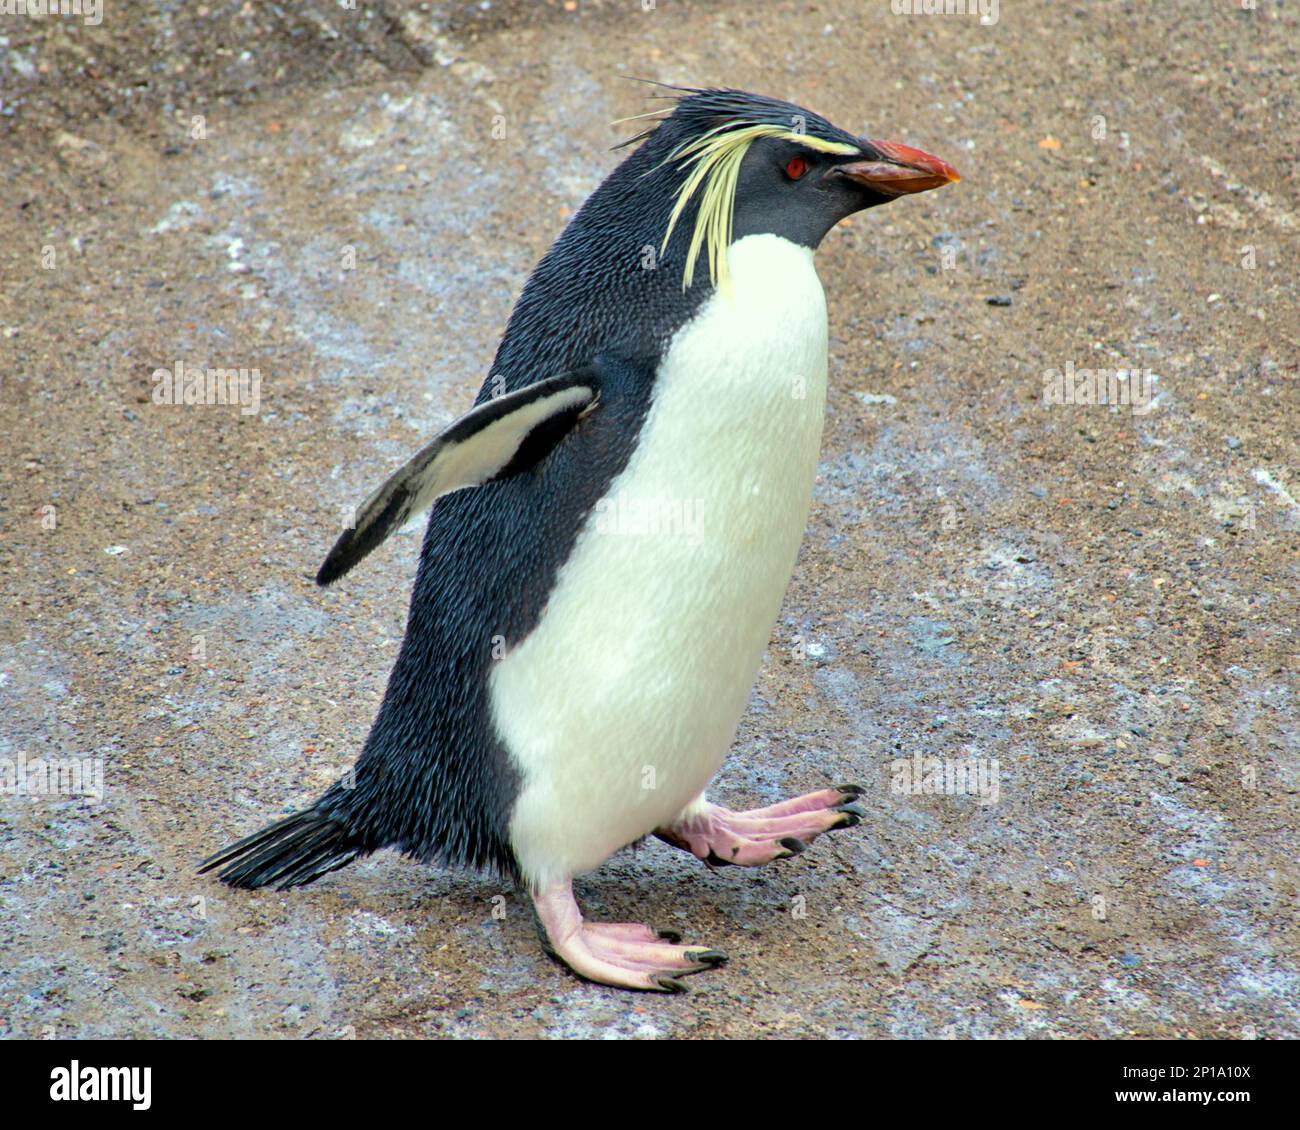 rockhopper Penguins cantare sotto la pioggia. Il secondo giorno di primavera ha visto la pioggia come lo zoo e i suoi animali ne hanno fatto il meglio. Foto Stock